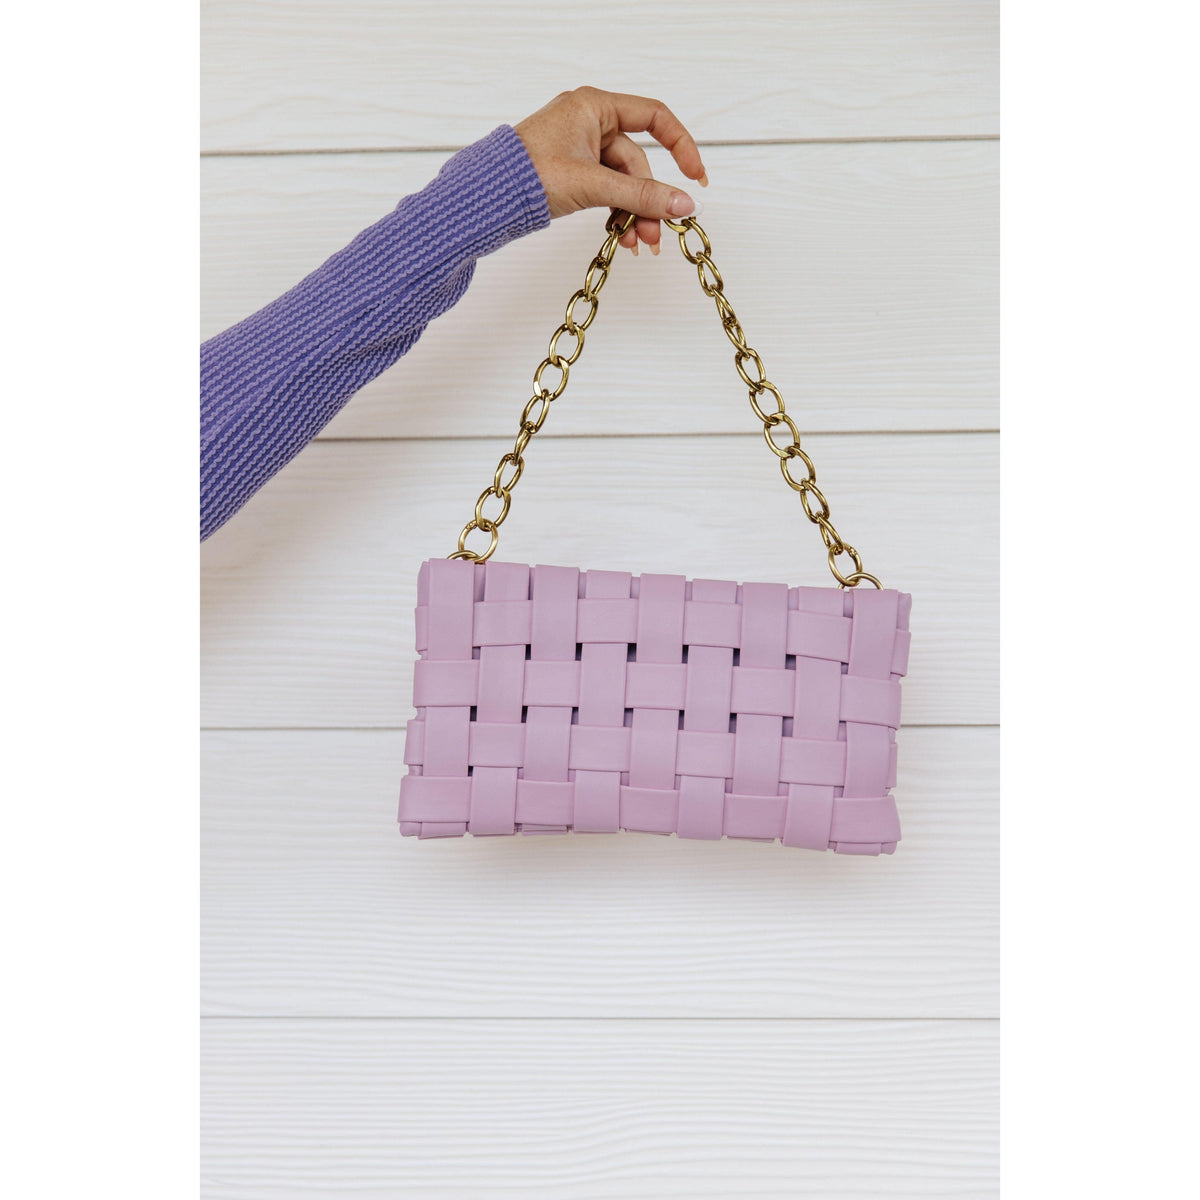 Forever Falling Handbag in Lilac - becauseofadi